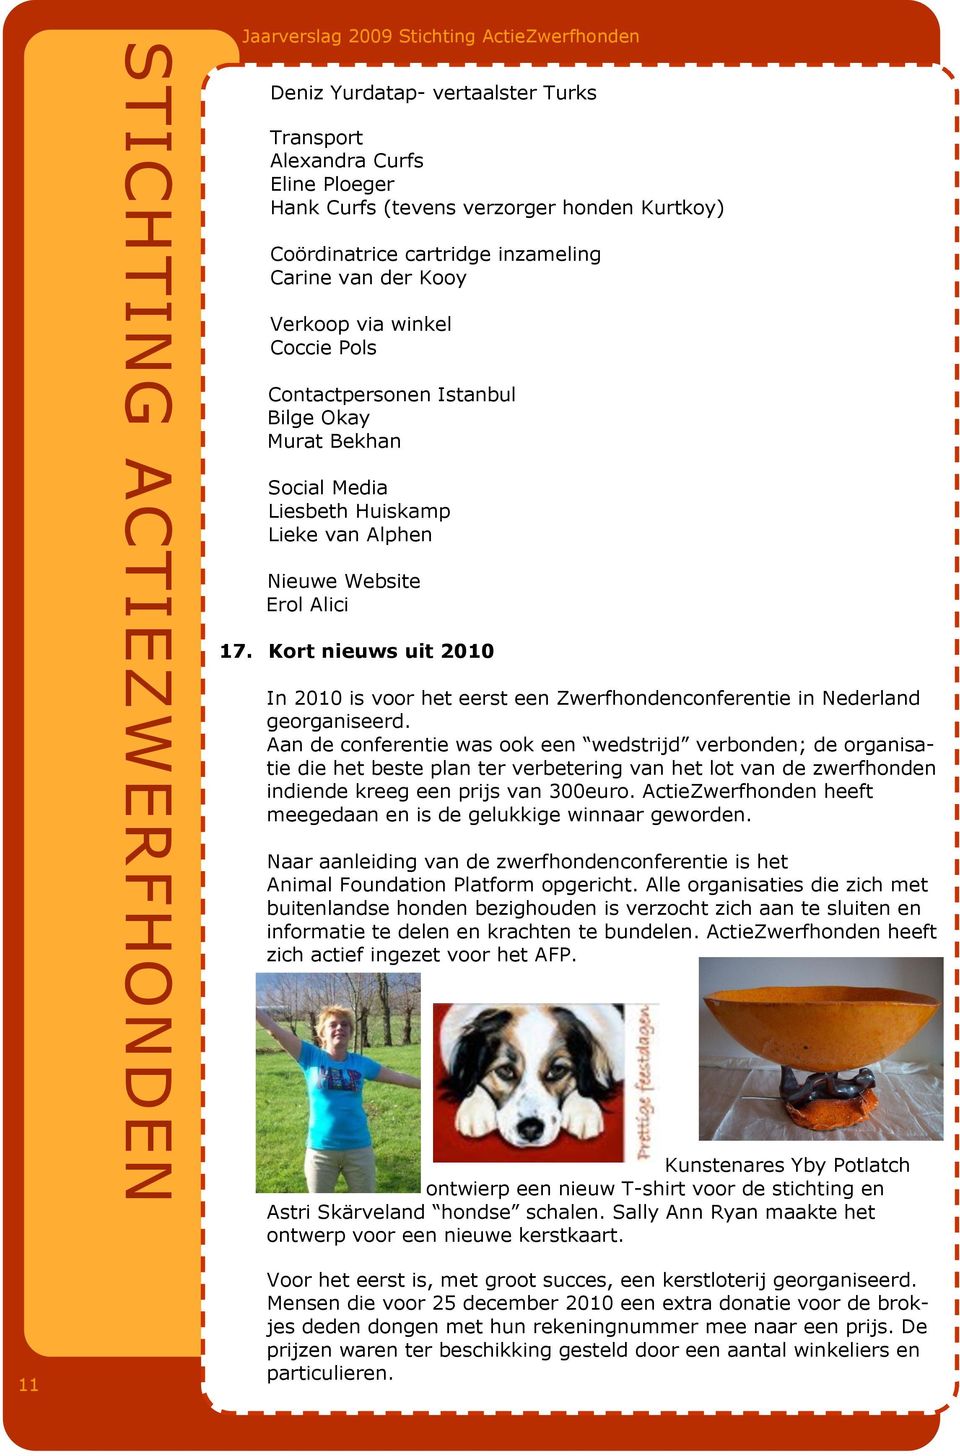 Kort nieuws uit 2010 In 2010 is voor het eerst een Zwerfhondenconferentie in Nederland georganiseerd.